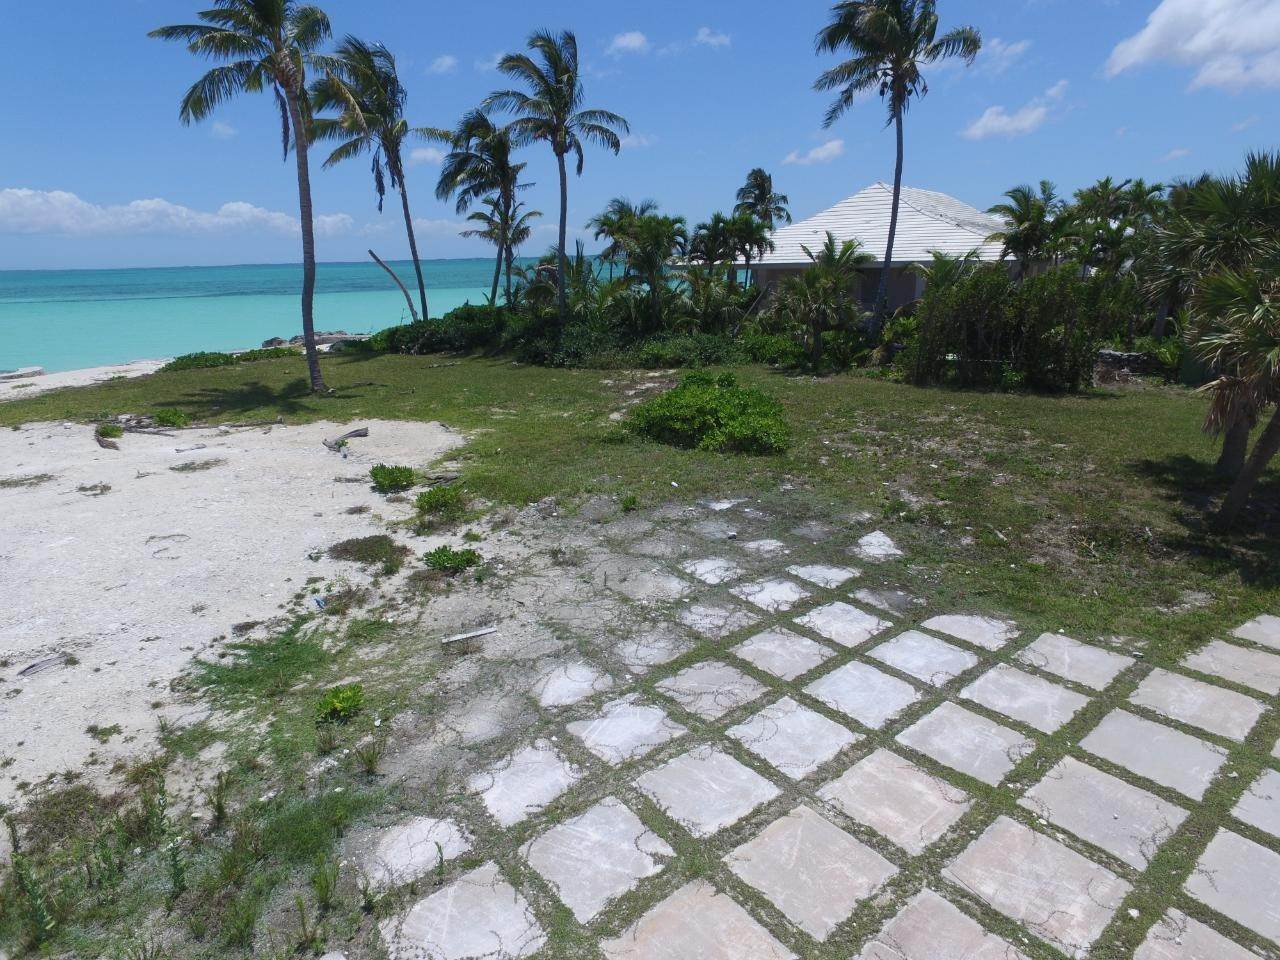 14. Lots / Acreage for Sale at Windward Beach, Treasure Cay, Abaco, Bahamas